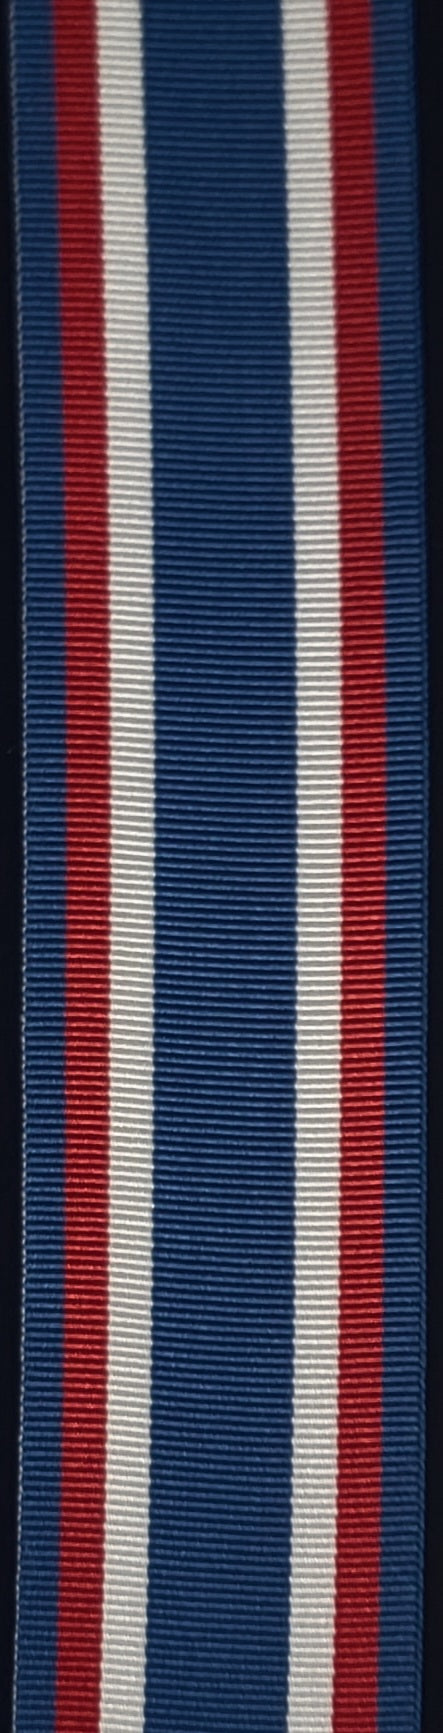 Ribbon, ANAVETS Cadet Medal of Merit